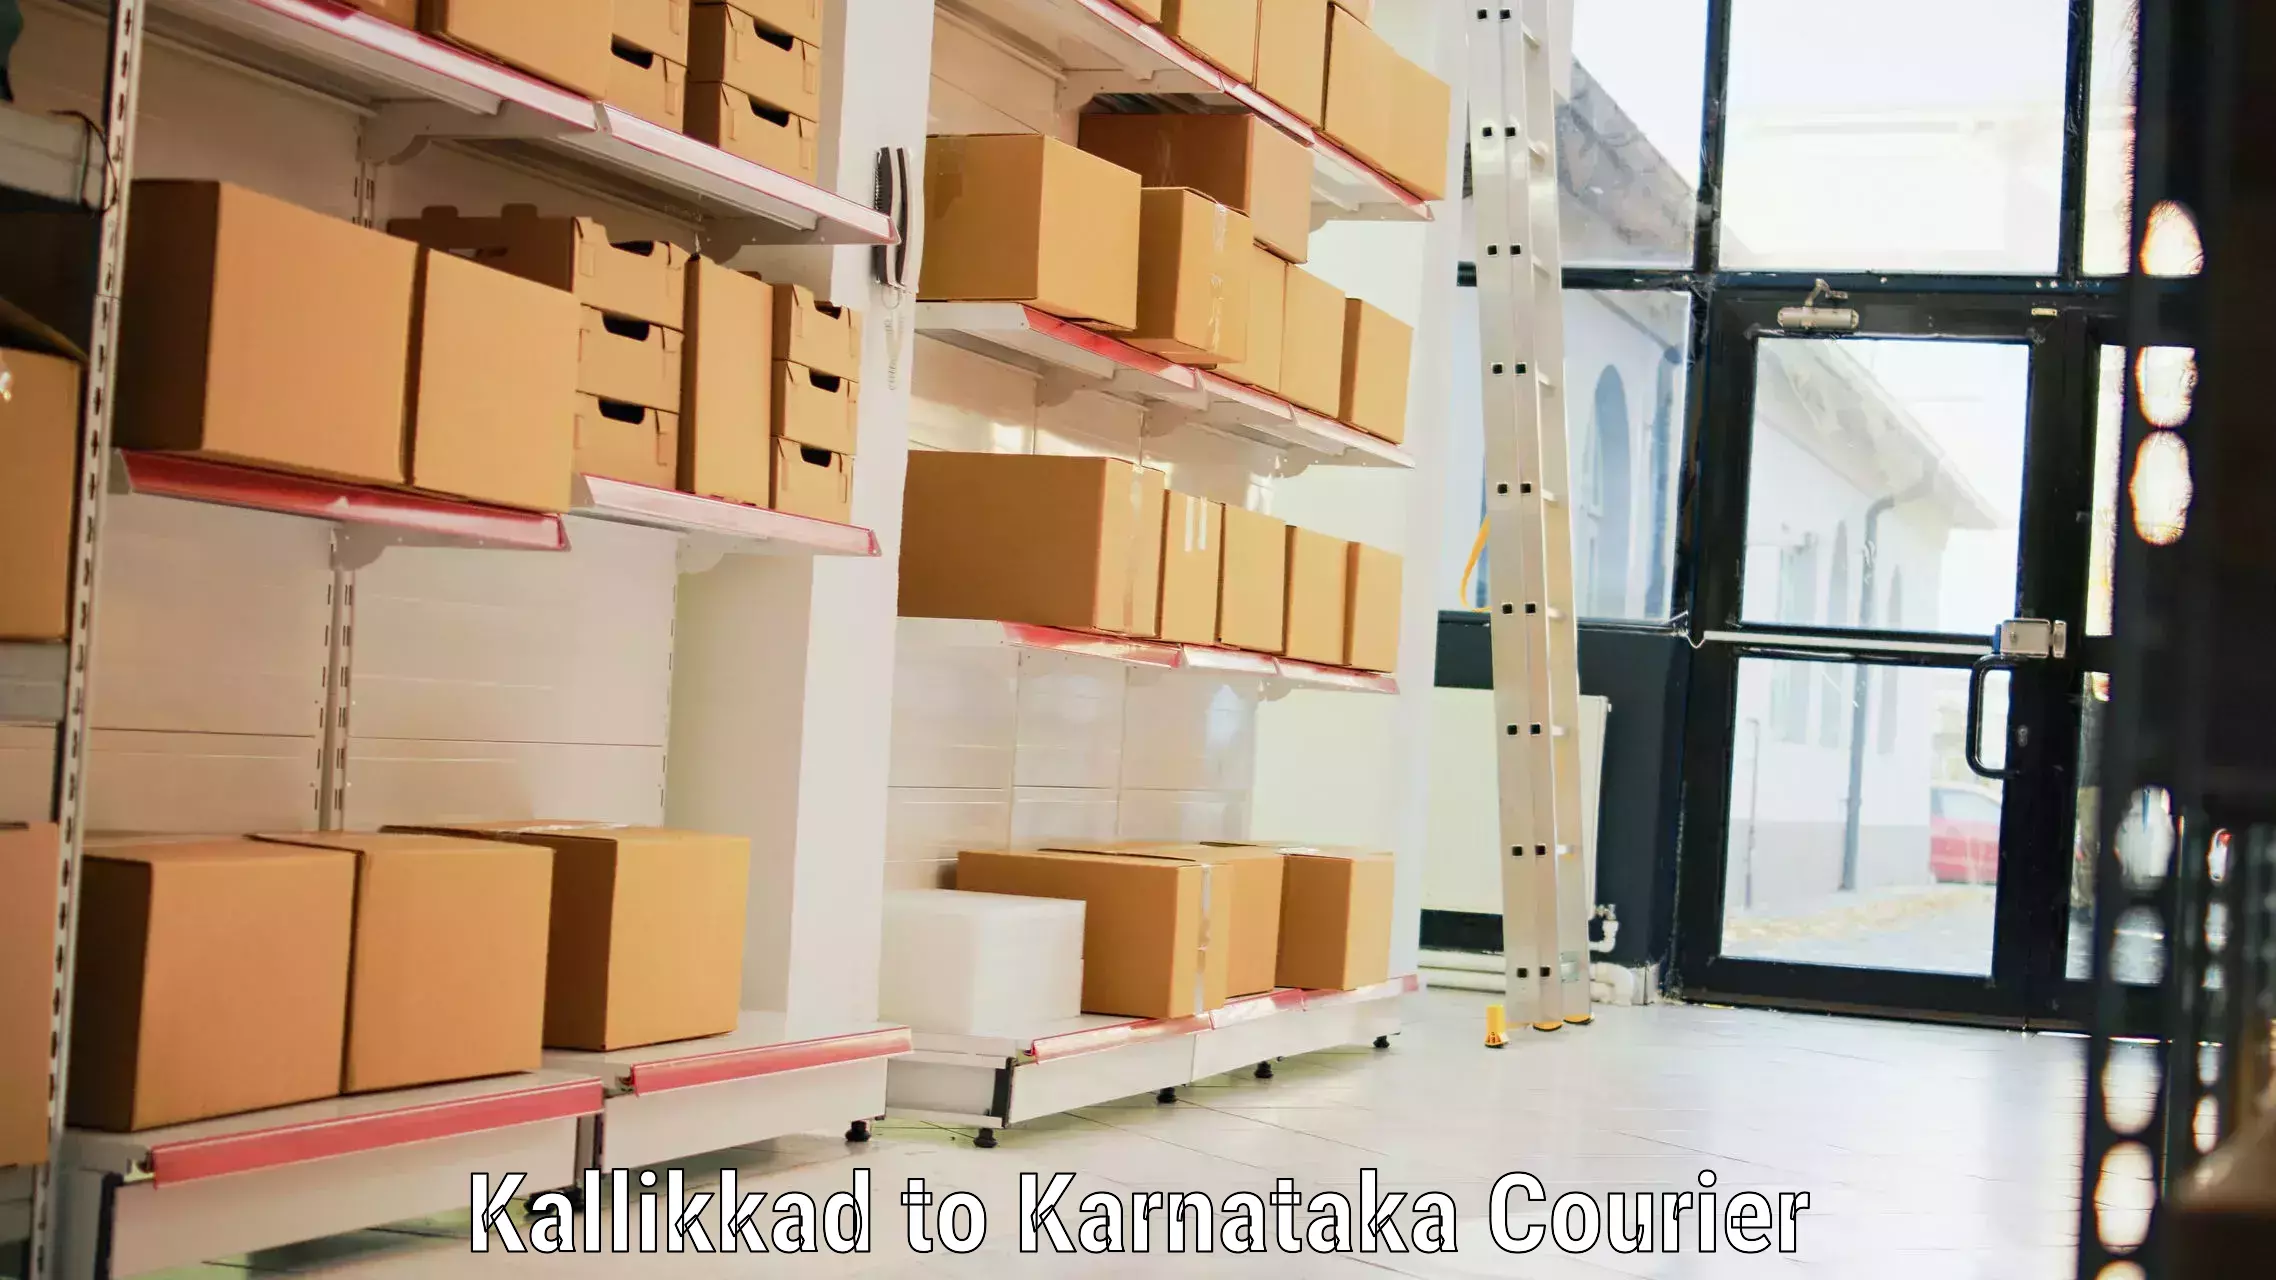 Door-to-door baggage service Kallikkad to Mangalore Port